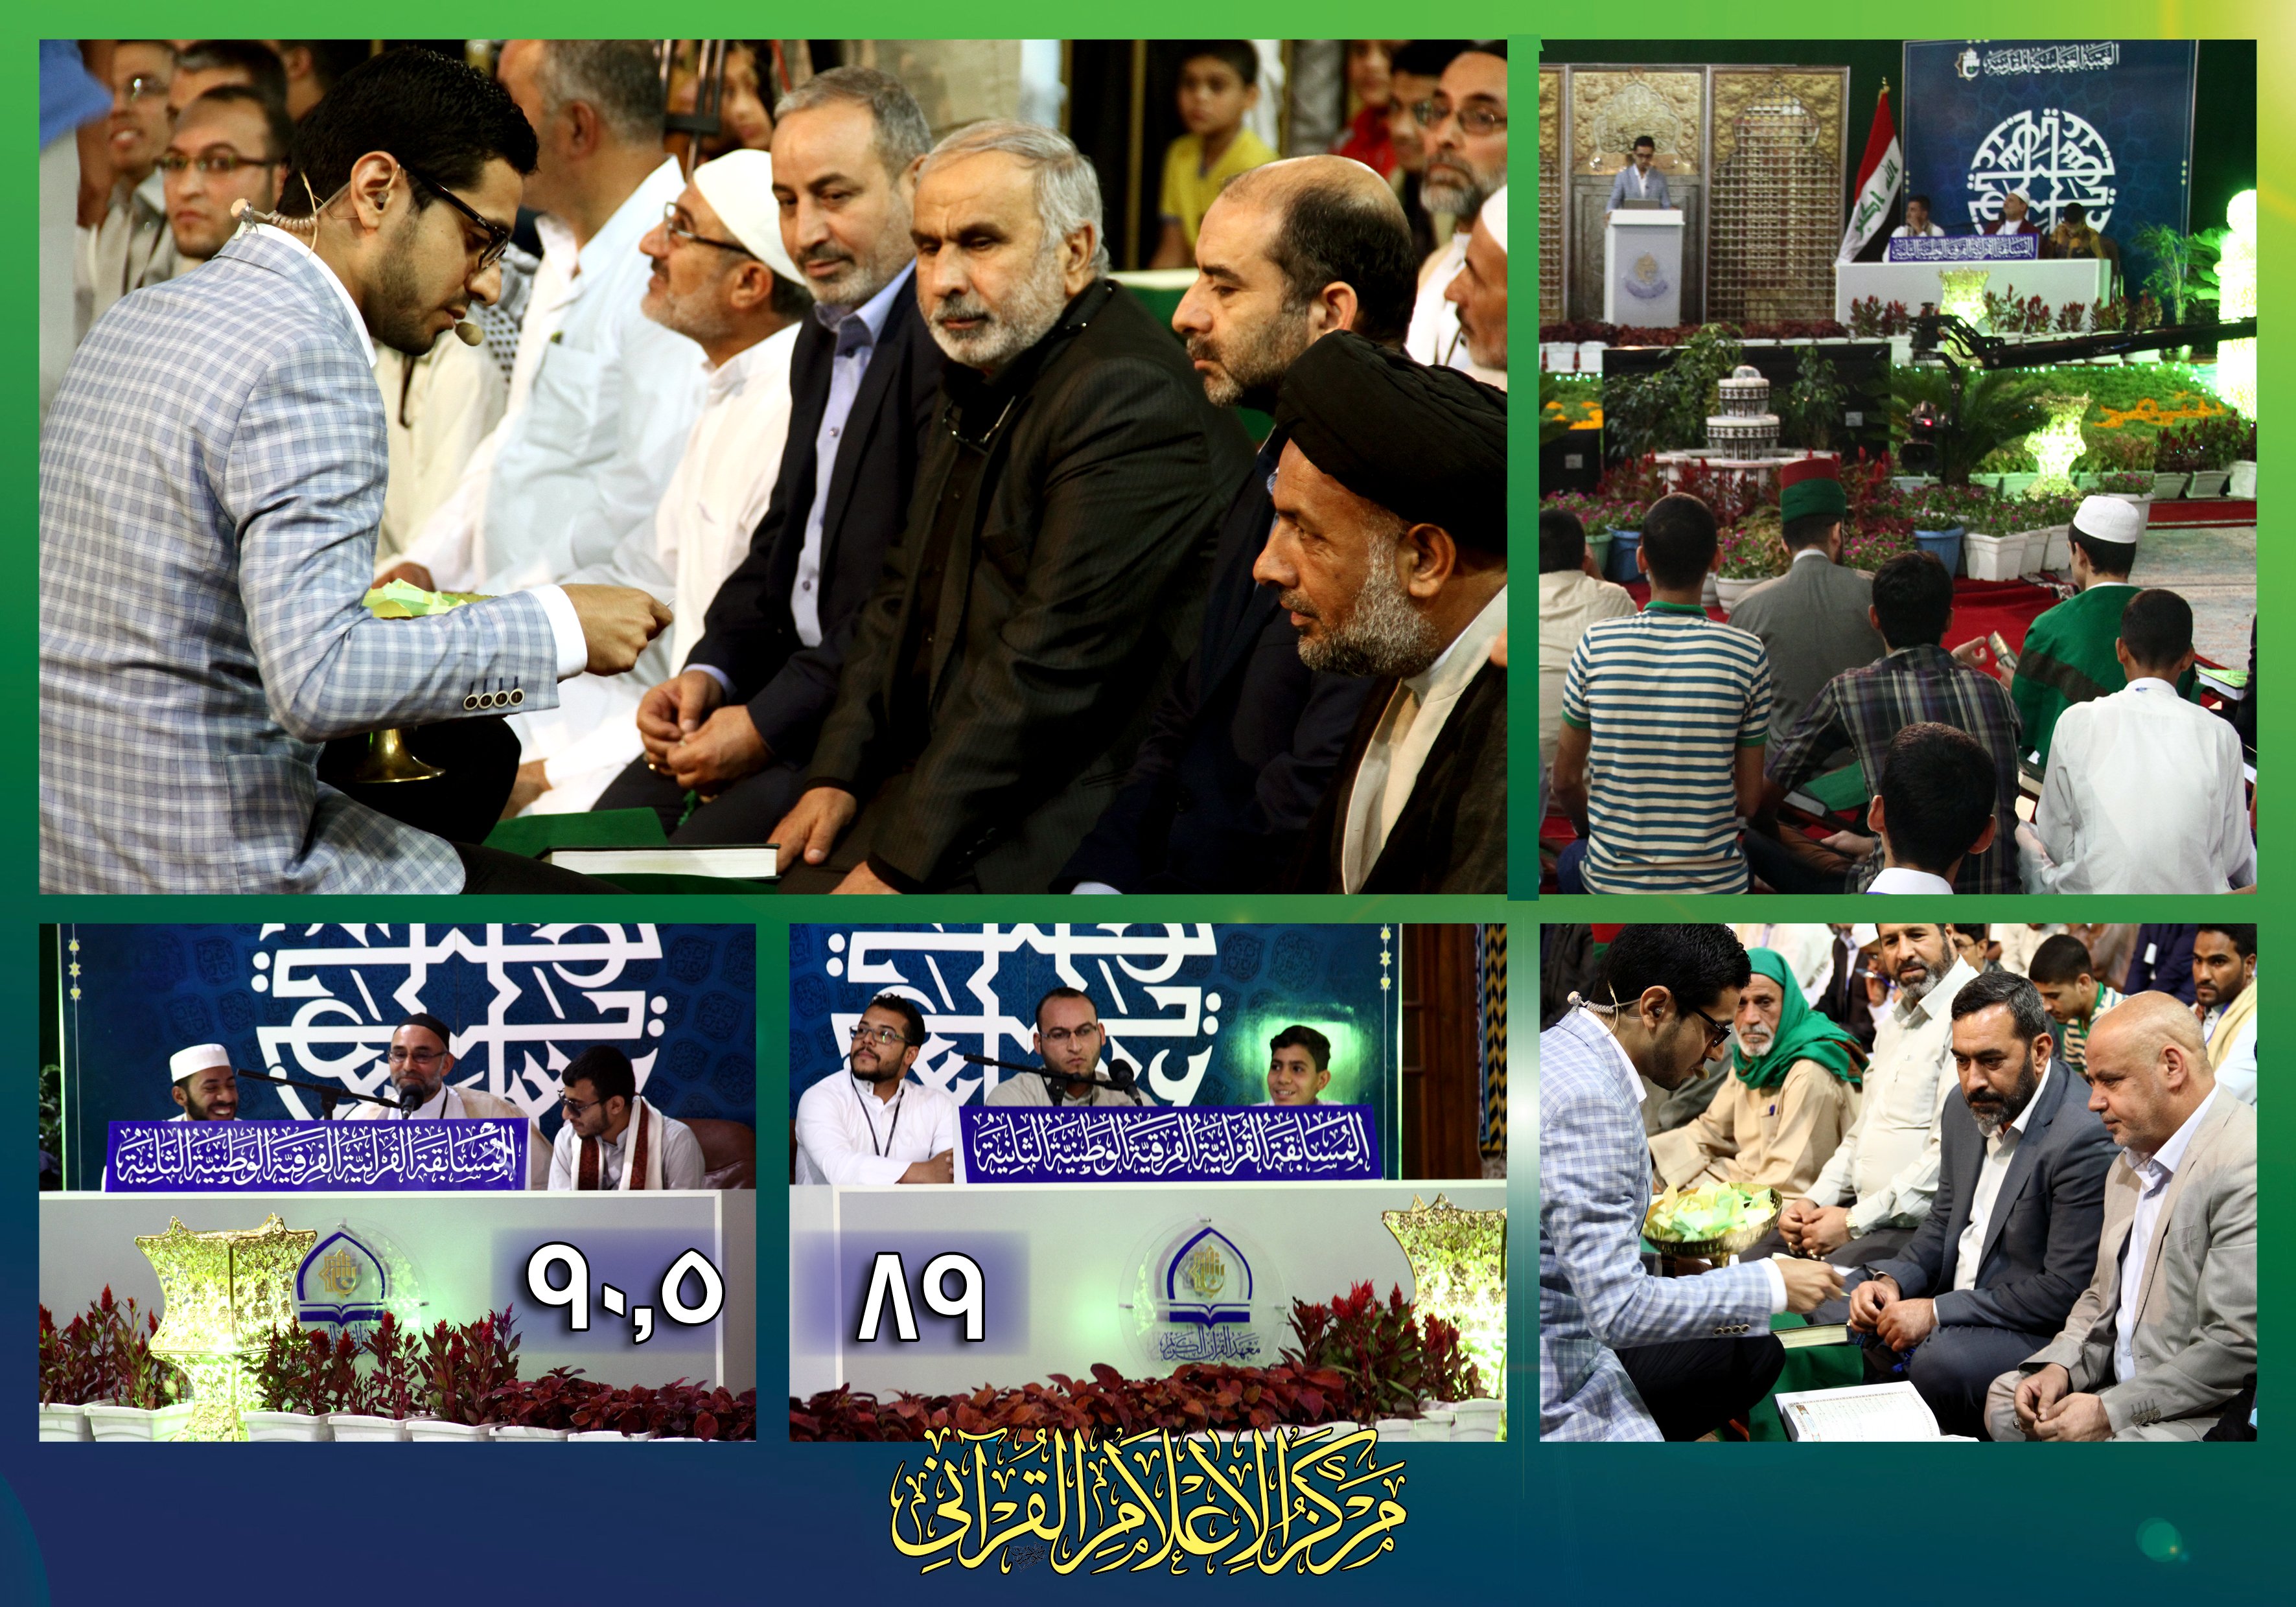 نتائج المرحلة الأولى من المسابقة القرآنية الفرقية الوطنية الثانية تكشف عن تنافس كبير بين الفرق المتسابقة.